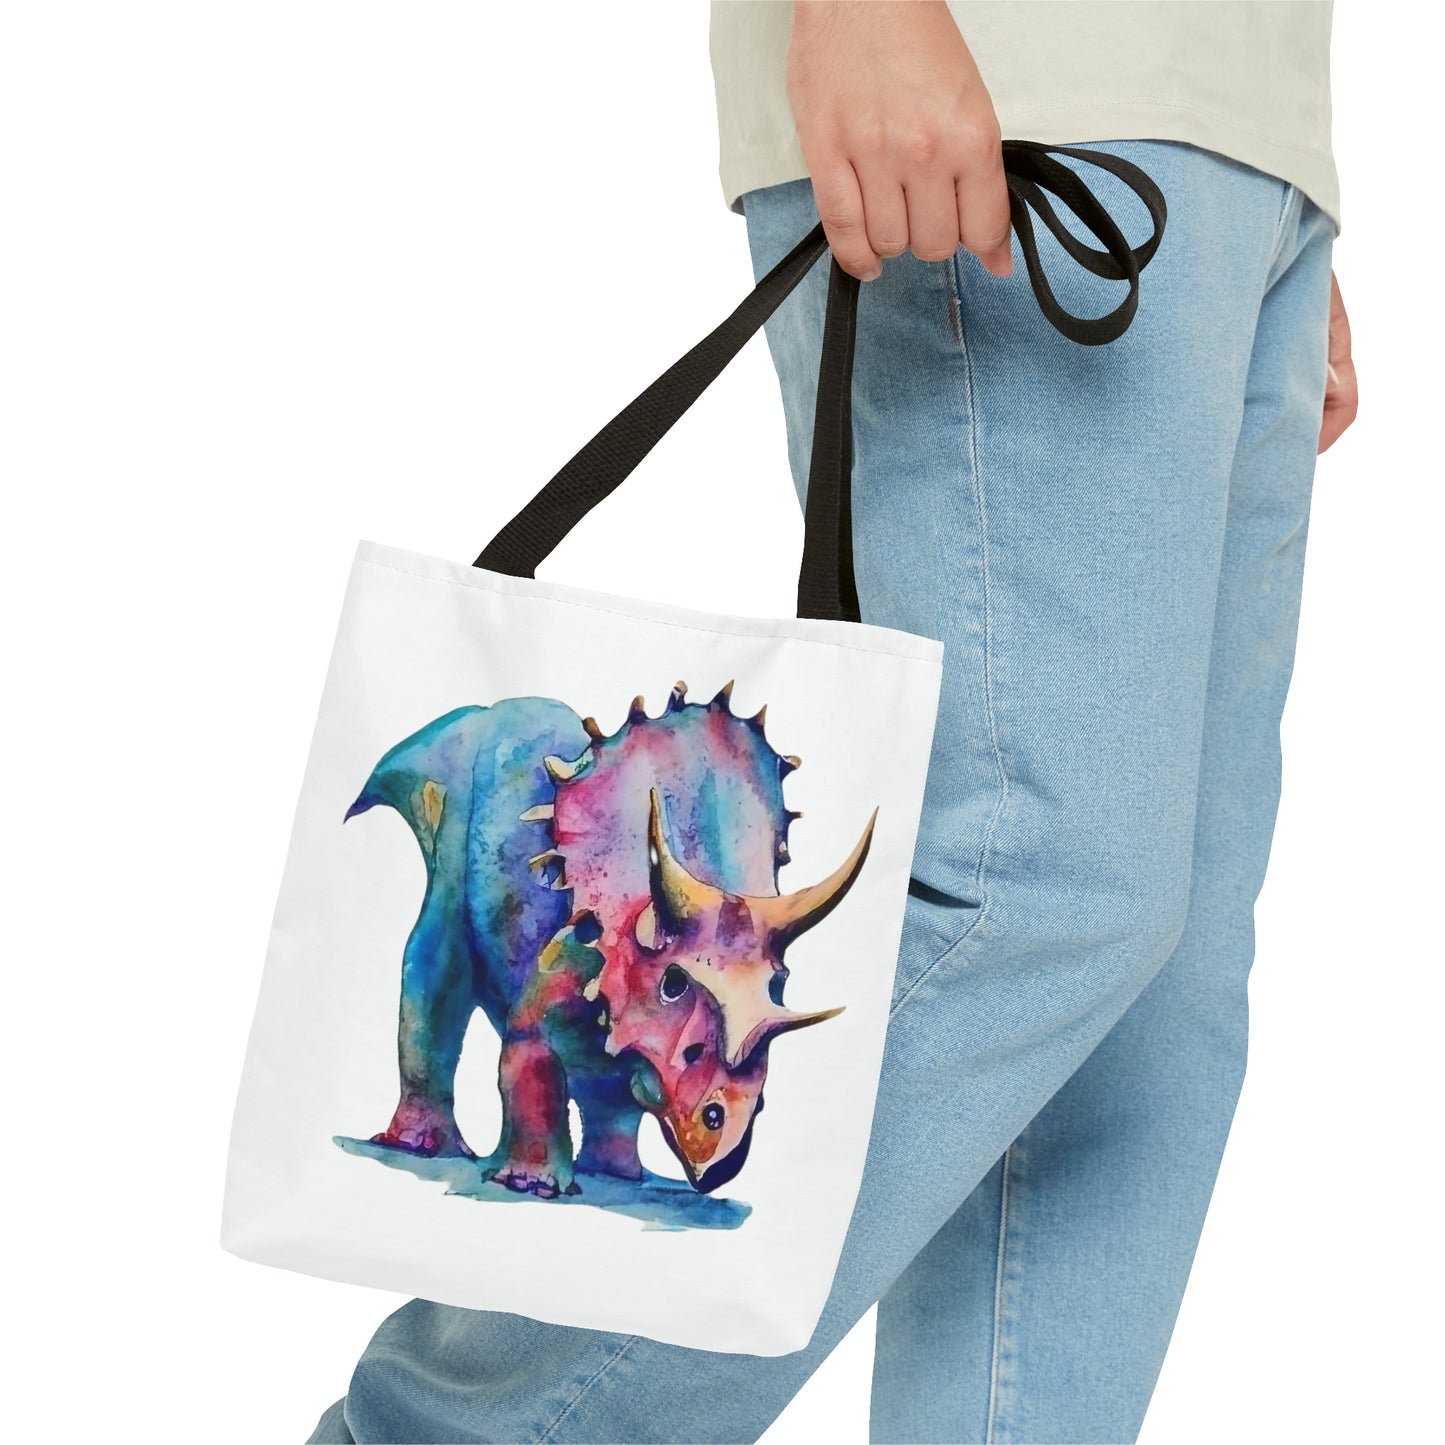 Triceratops Splendor: Tote Bag